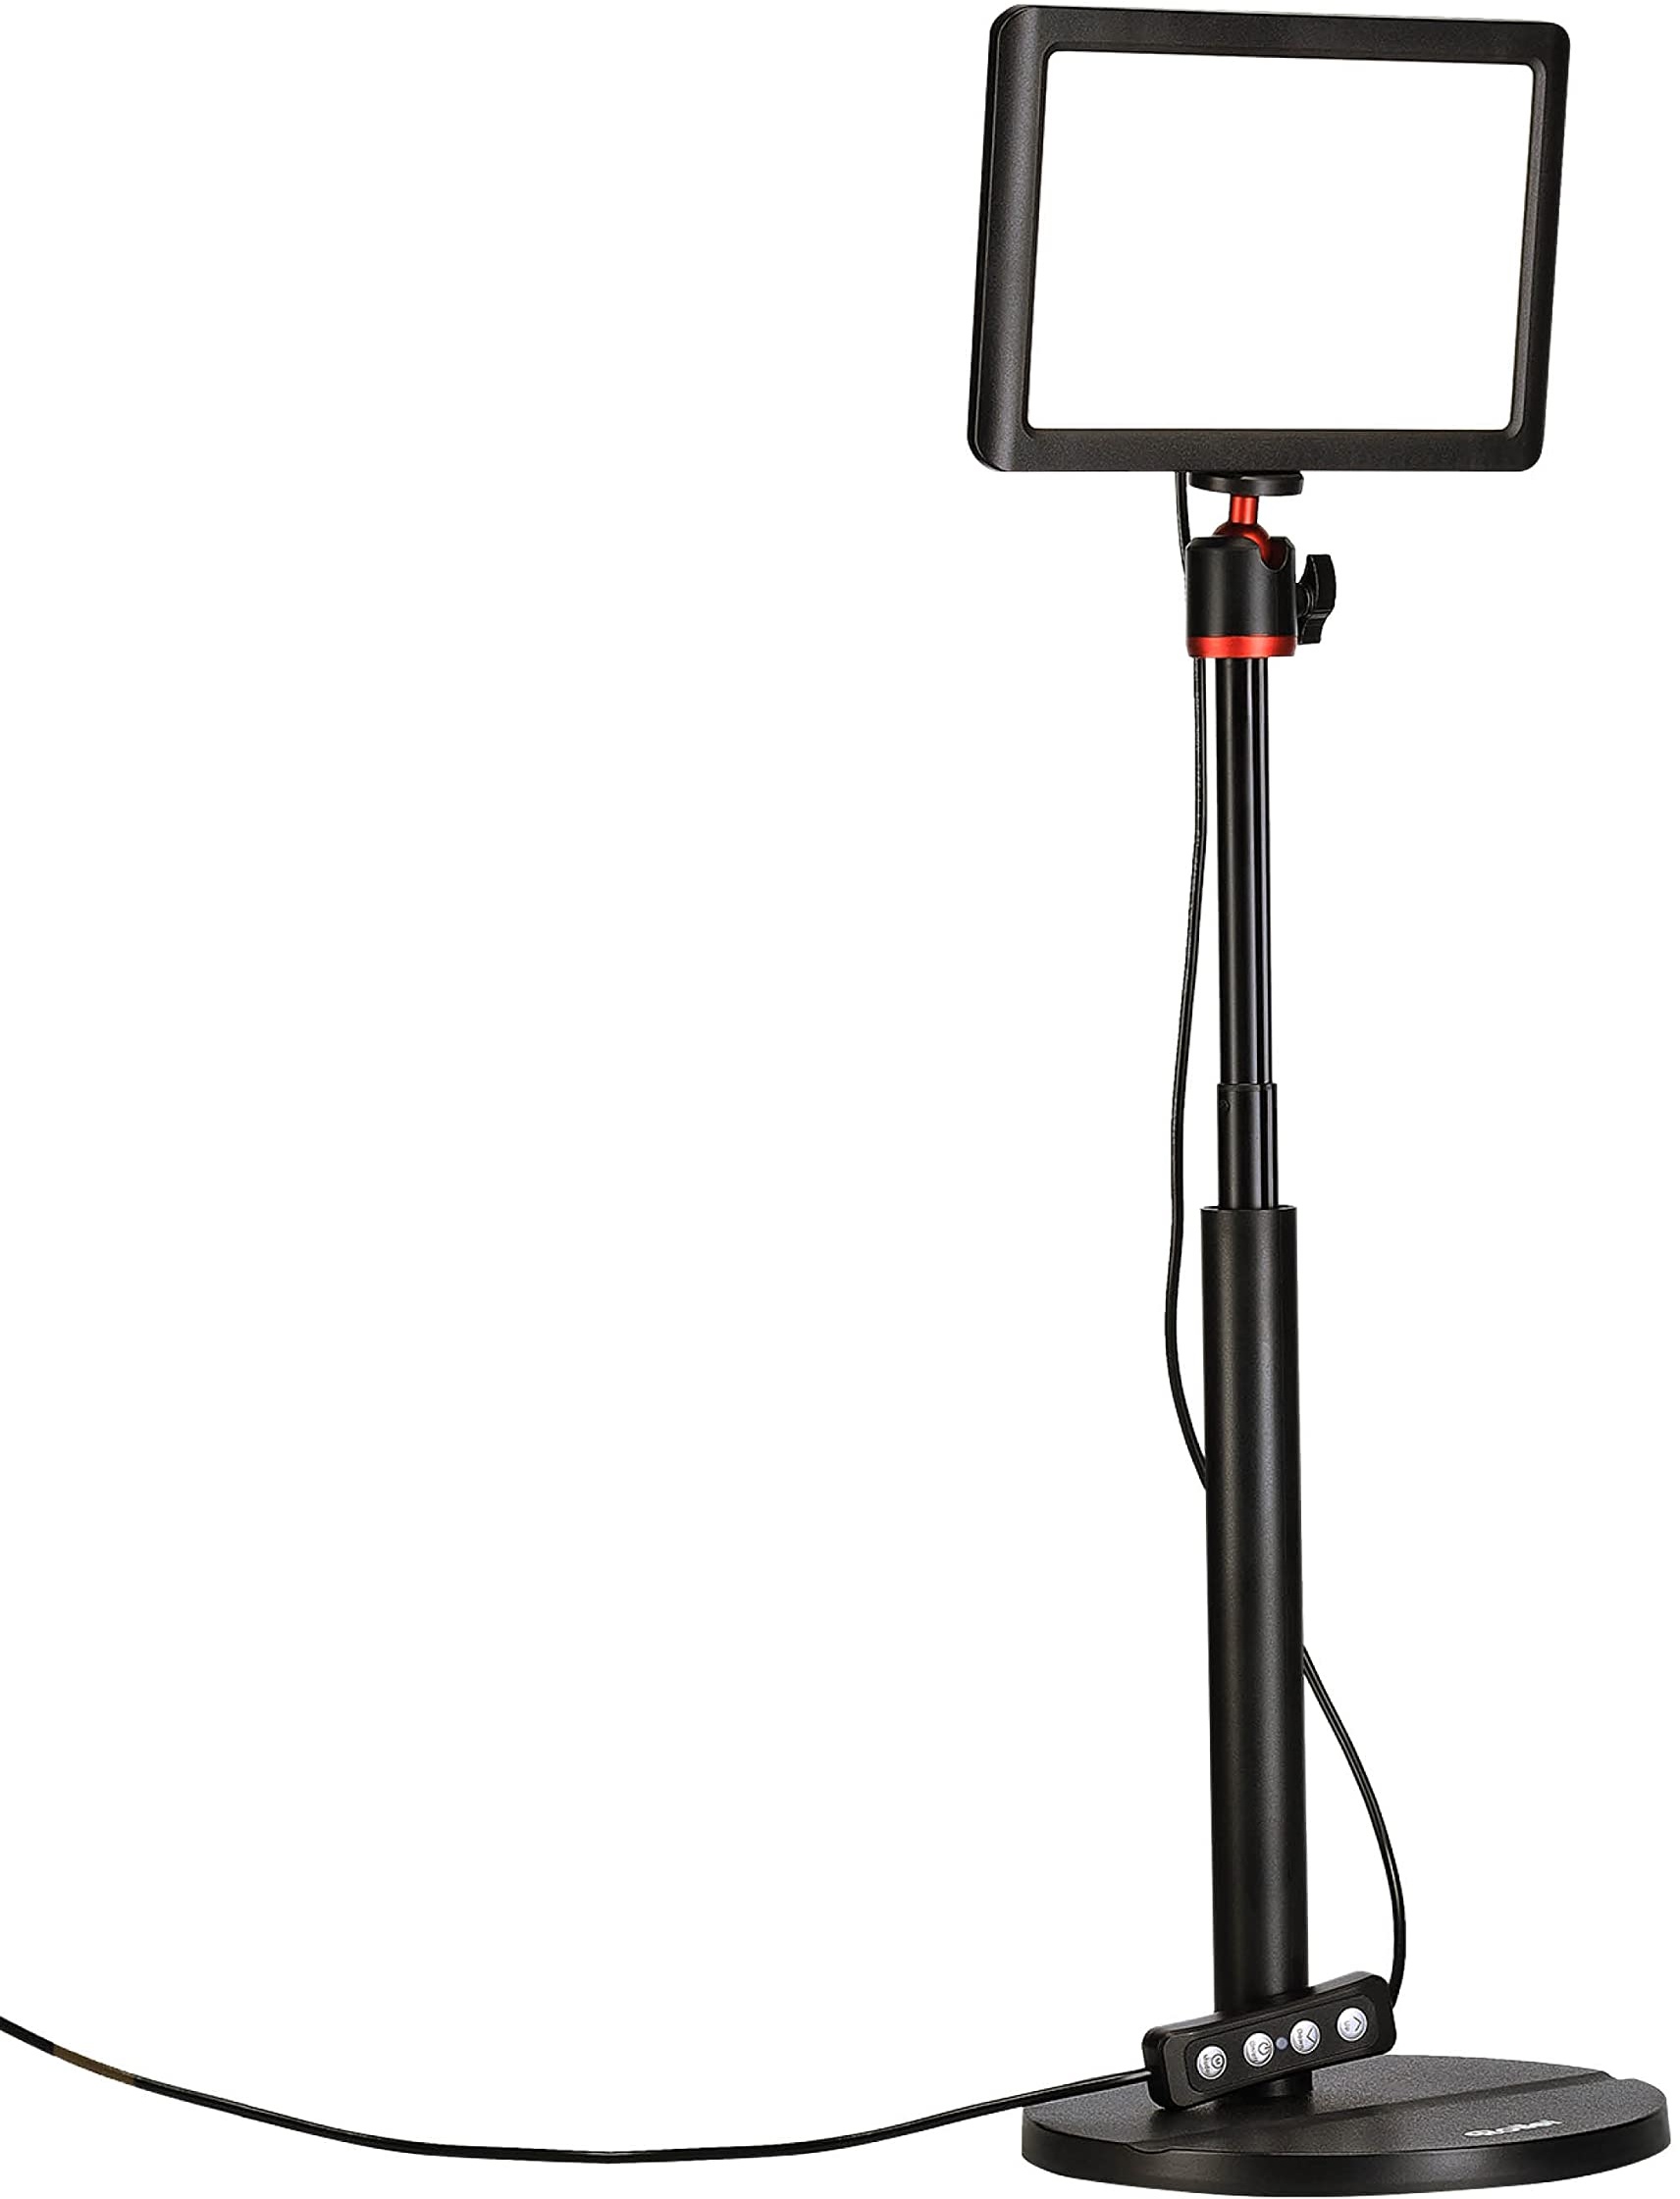 Rollei Lumis Key-Light, LED Videolicht inkl. Tischstativ mit Fernbedienung am Kabel zum Ausleuchten von Video-Streams und Konferenzen 28555 schwarz